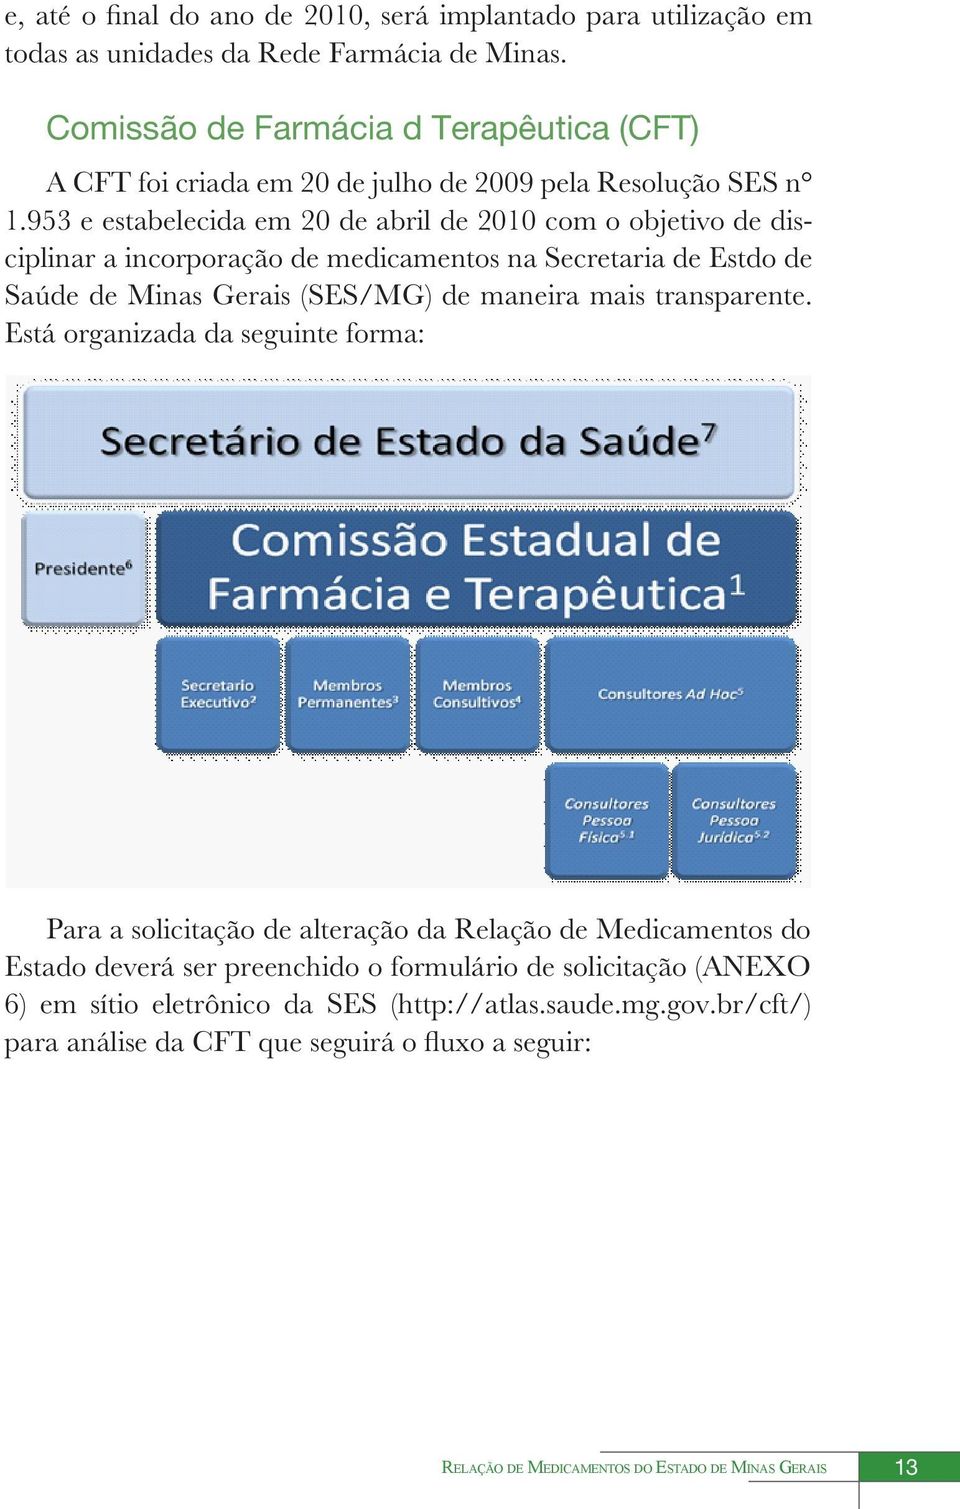 953 e estabelecida em 20 de abril de 2010 com o objetivo de disciplinar a incorporação de medicamentos na Secretaria de Estdo de Saúde de Minas Gerais (SES/MG) de maneira mais